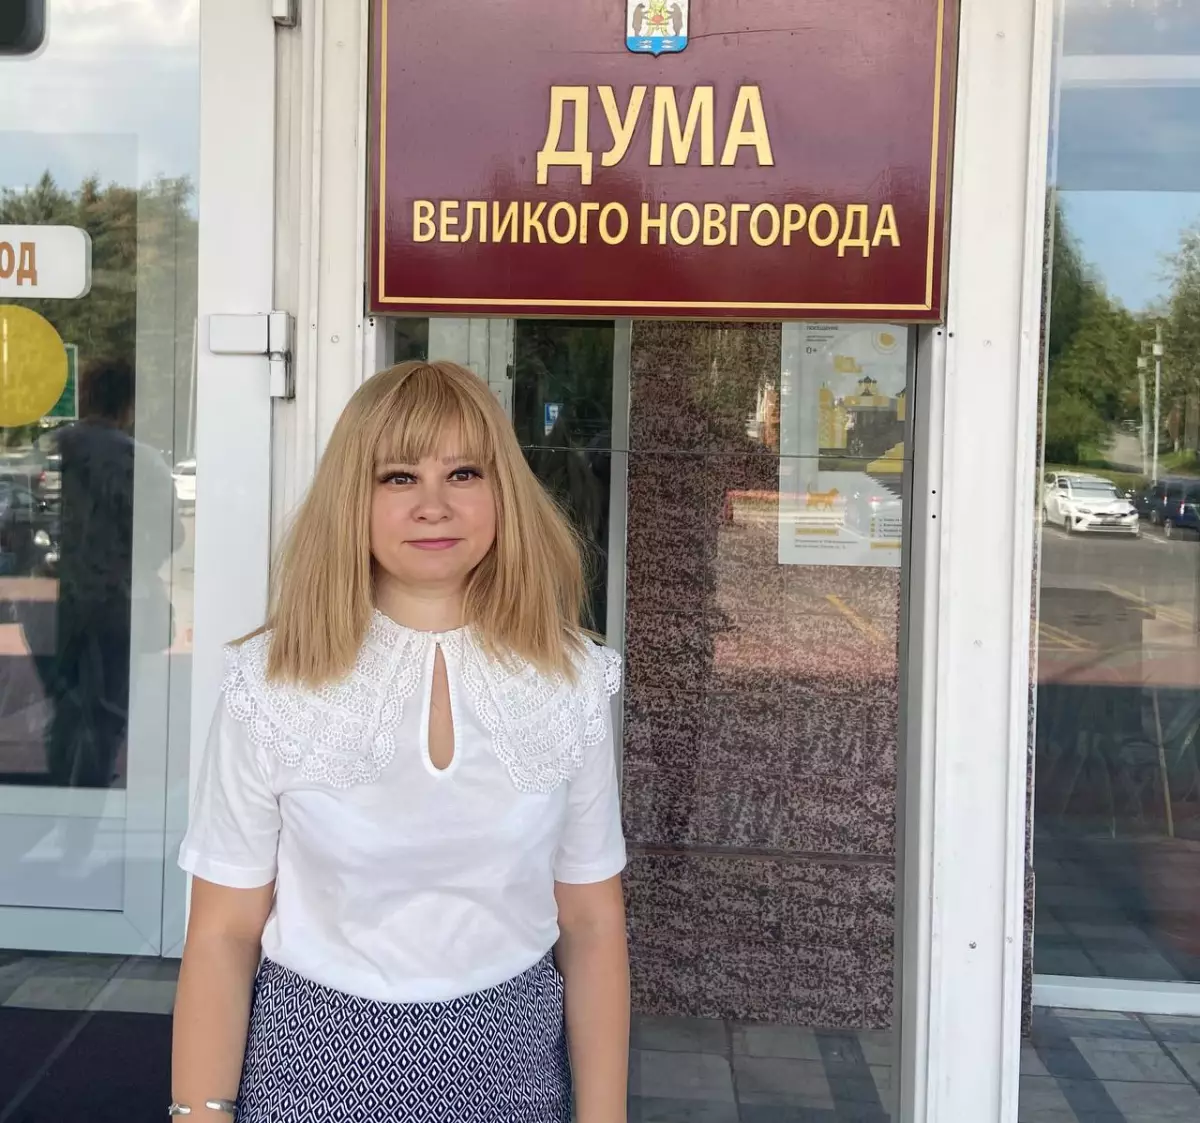 Анна Черепанова является председателем новгородского отделения партии «Яблоко».